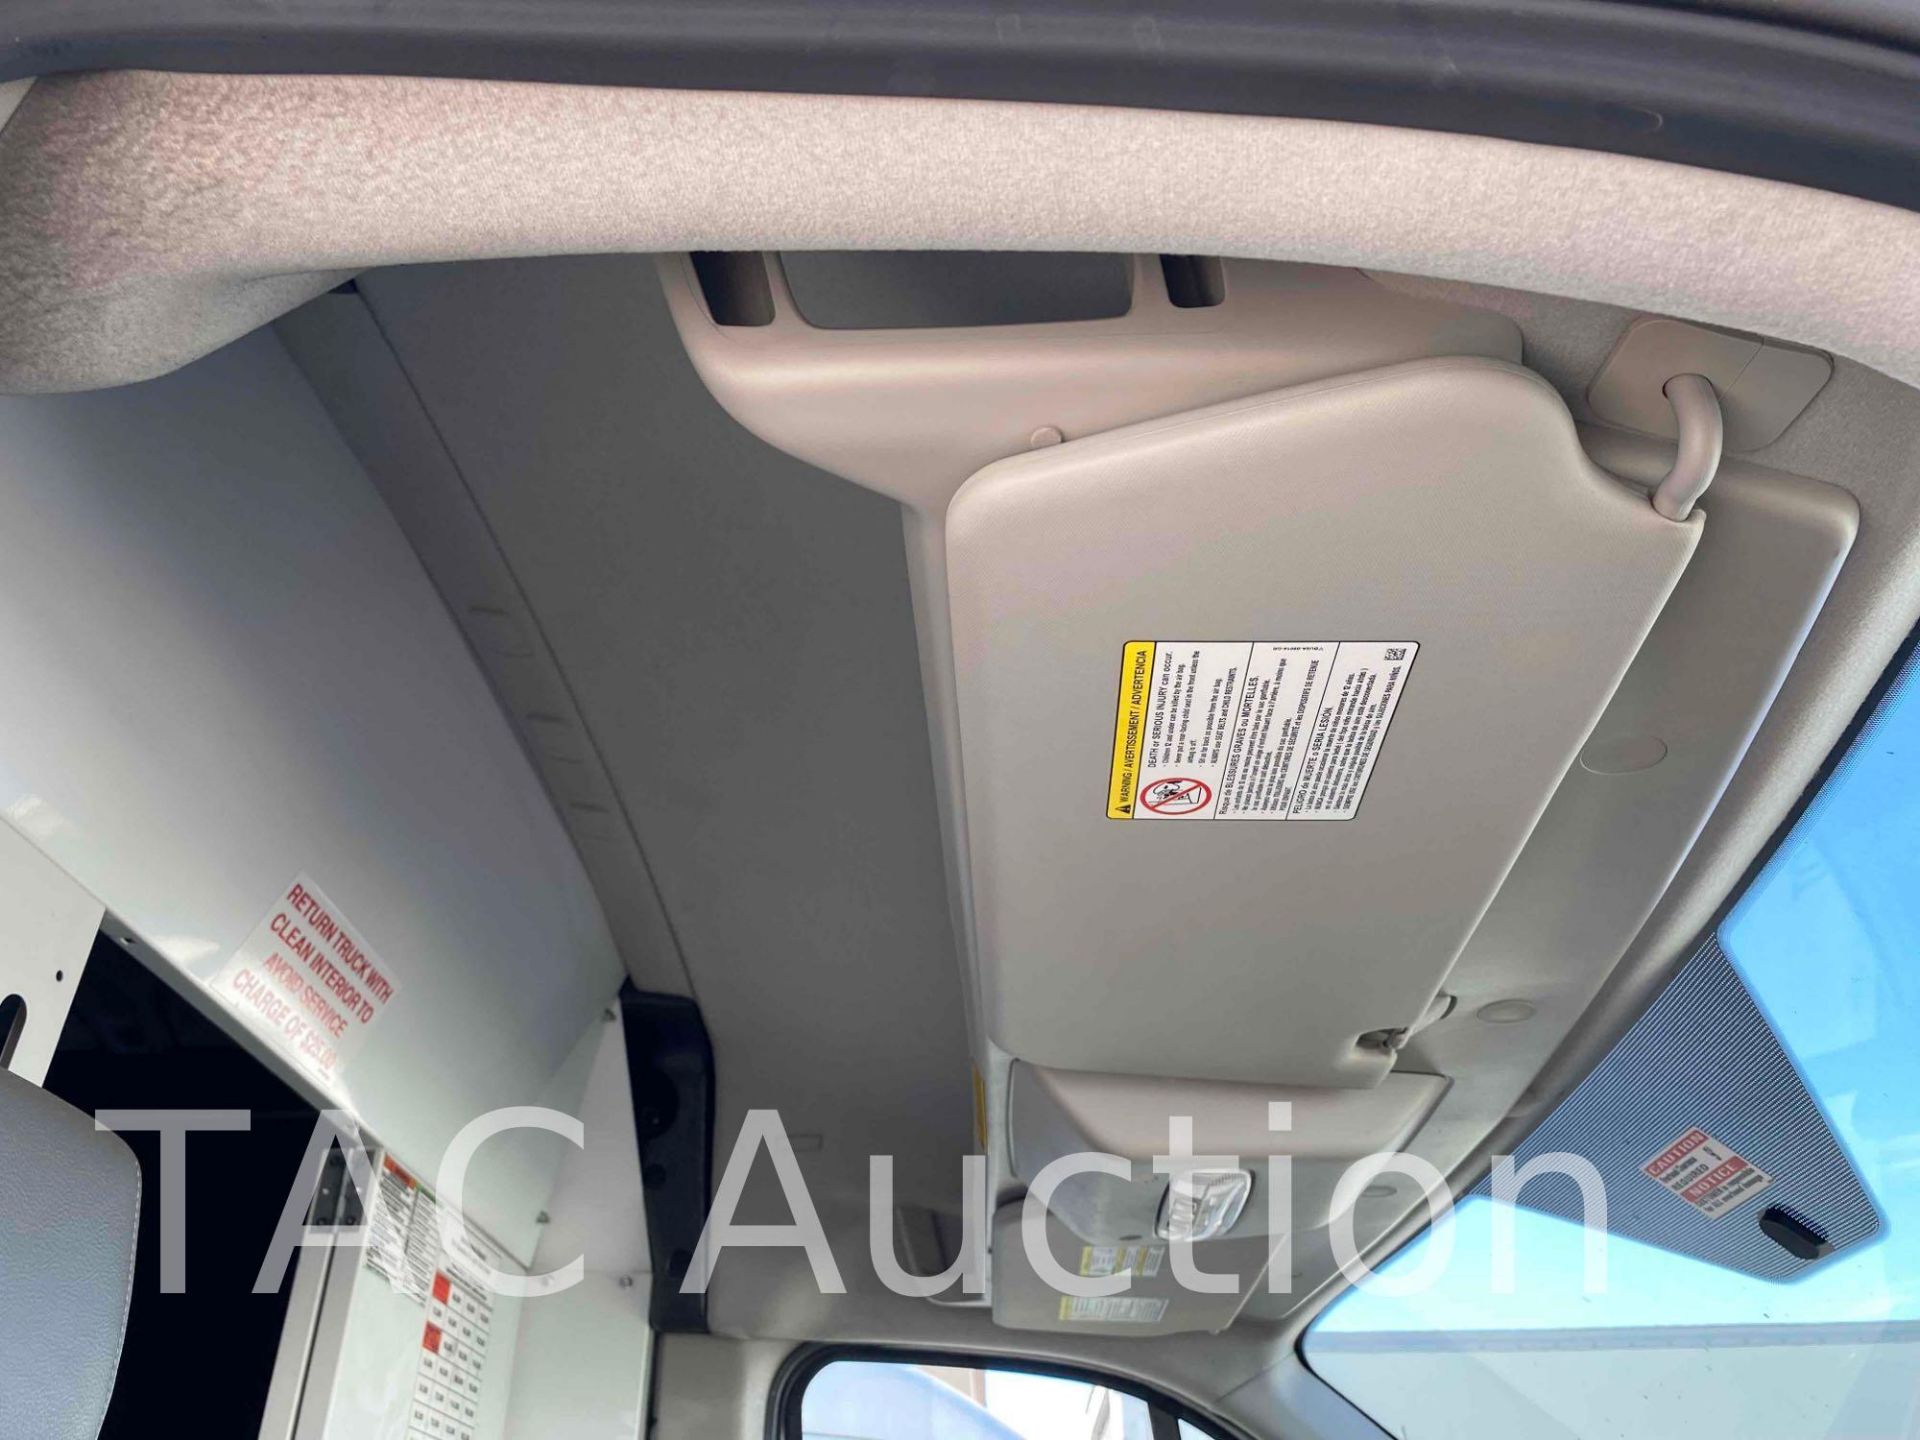 2019 Ford Transit 150 Cargo Van - Image 18 of 48